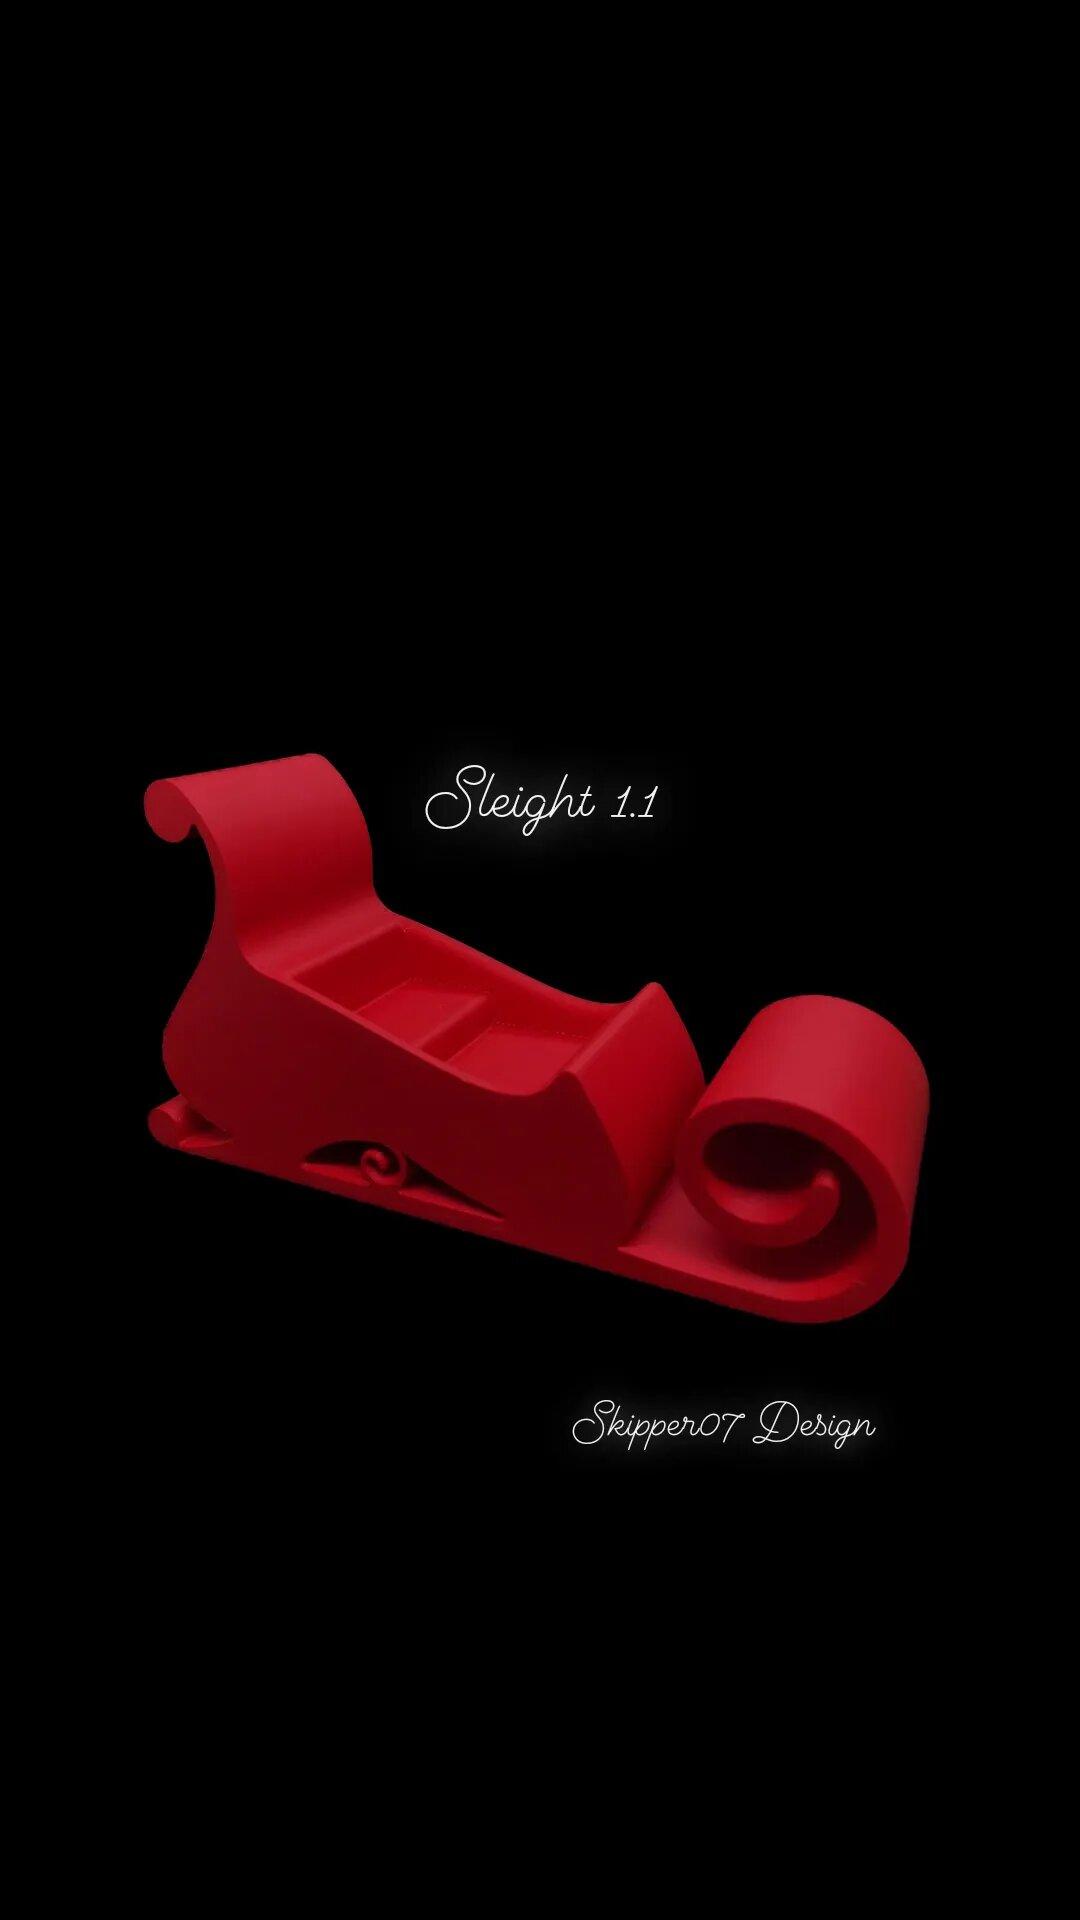 Sleight  1.1.stl 3d model